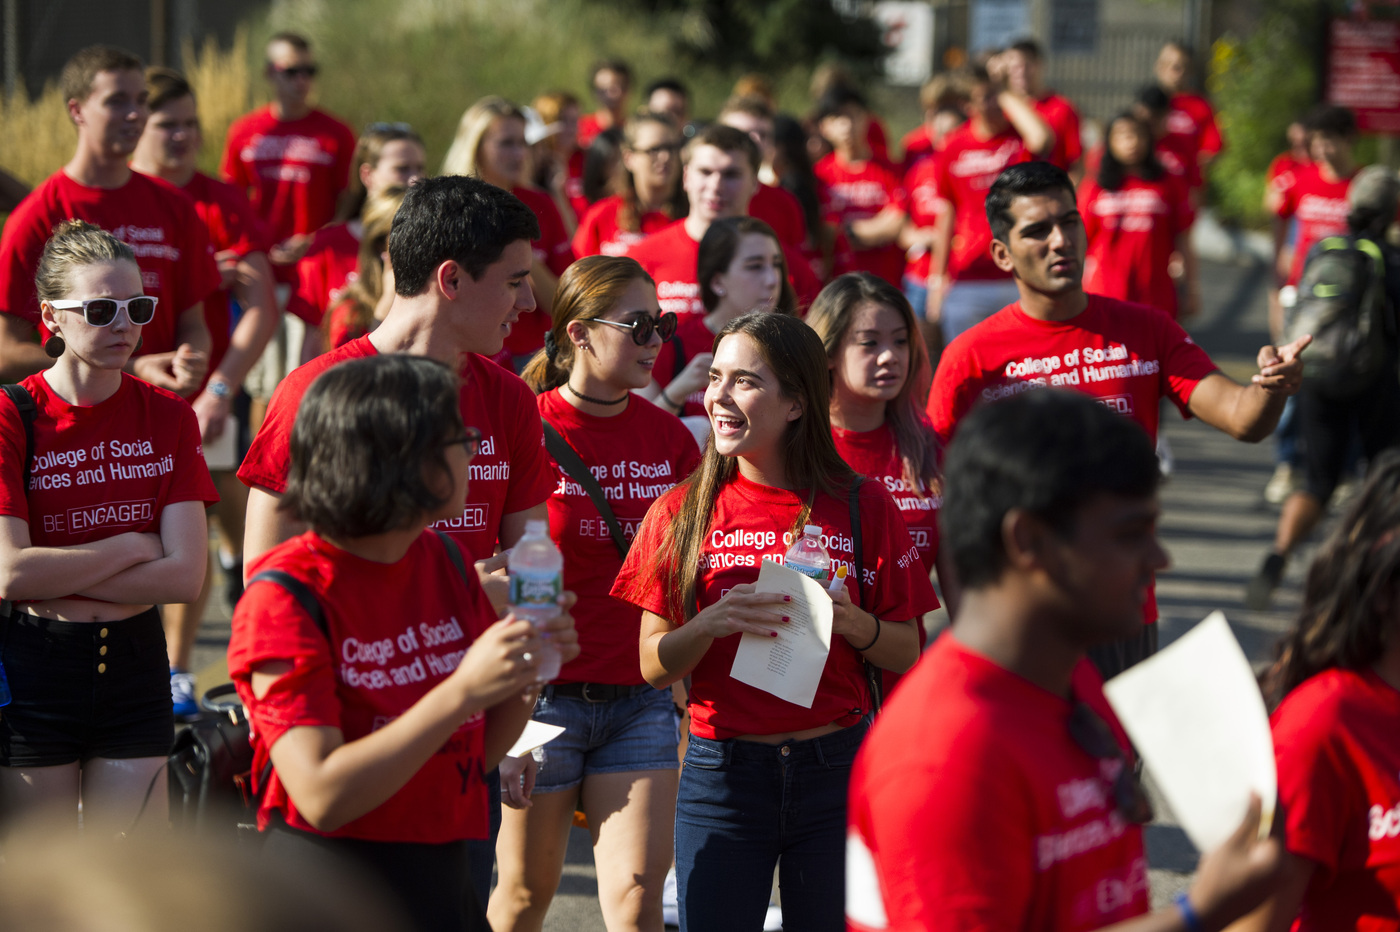 很多学生穿红色衬衫“社会科学和人文学院”